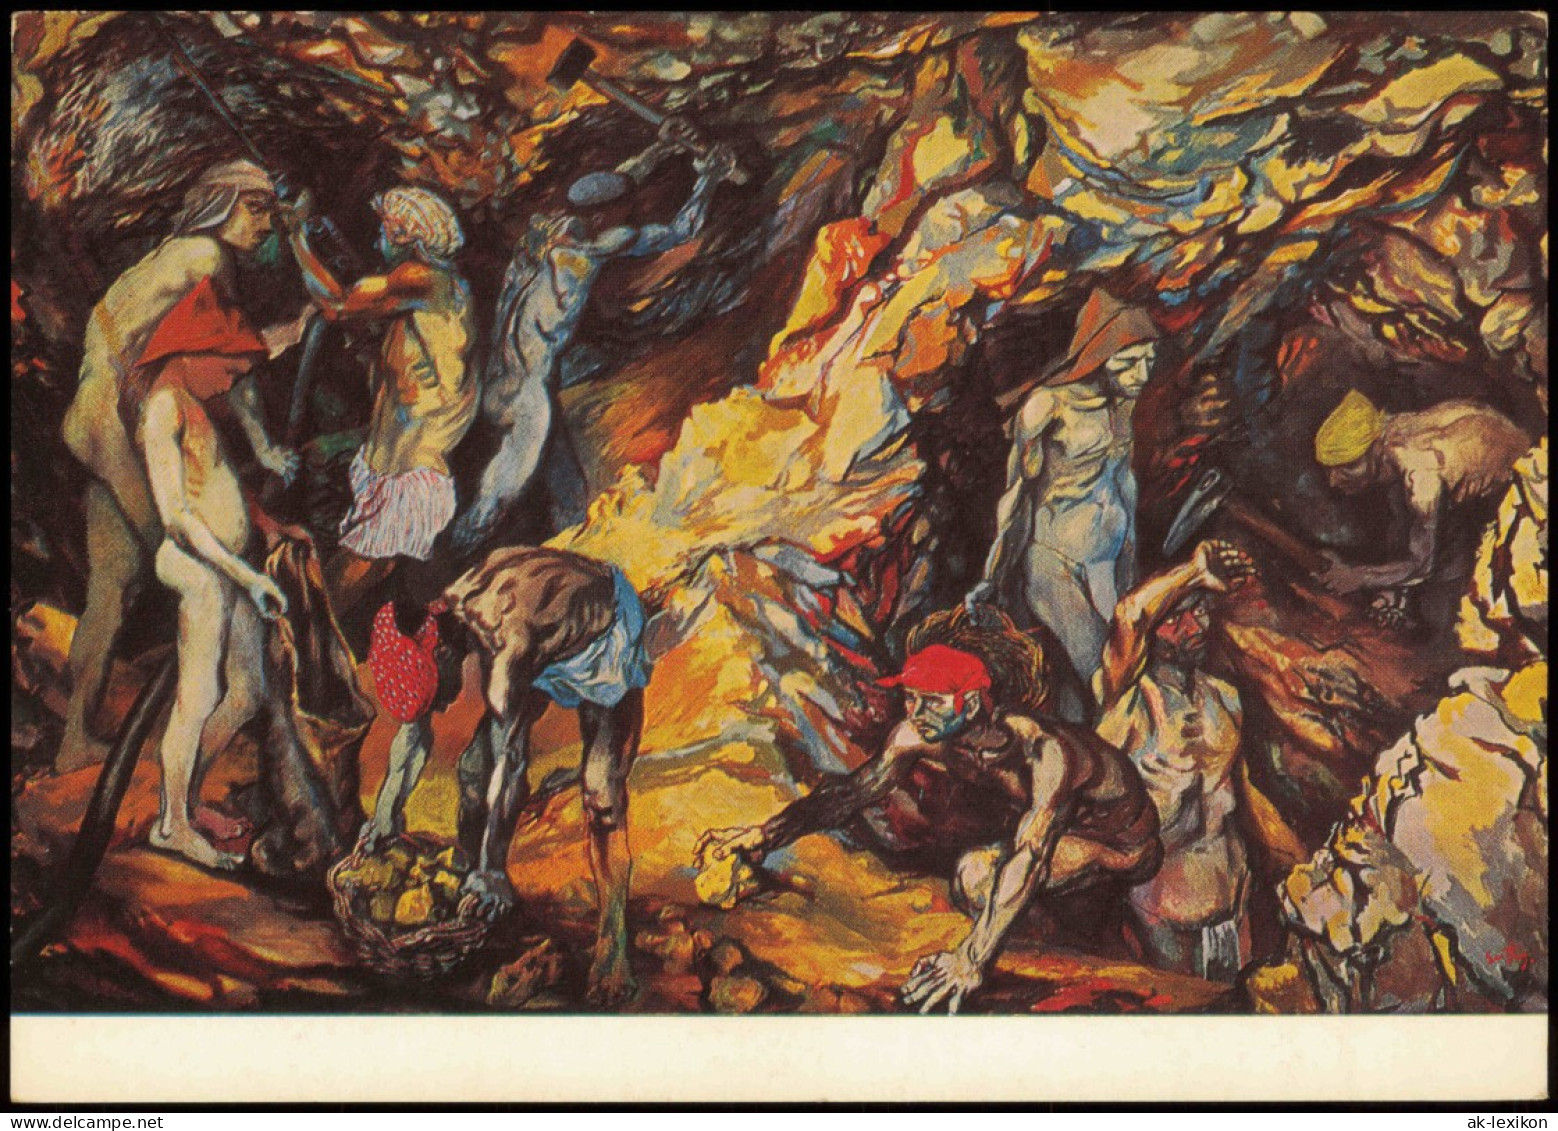 Künstlerkarte Kunstwerk: RENATO GUTTUSO (geb. 1912) Schwefelgrube 1970 - Schilderijen